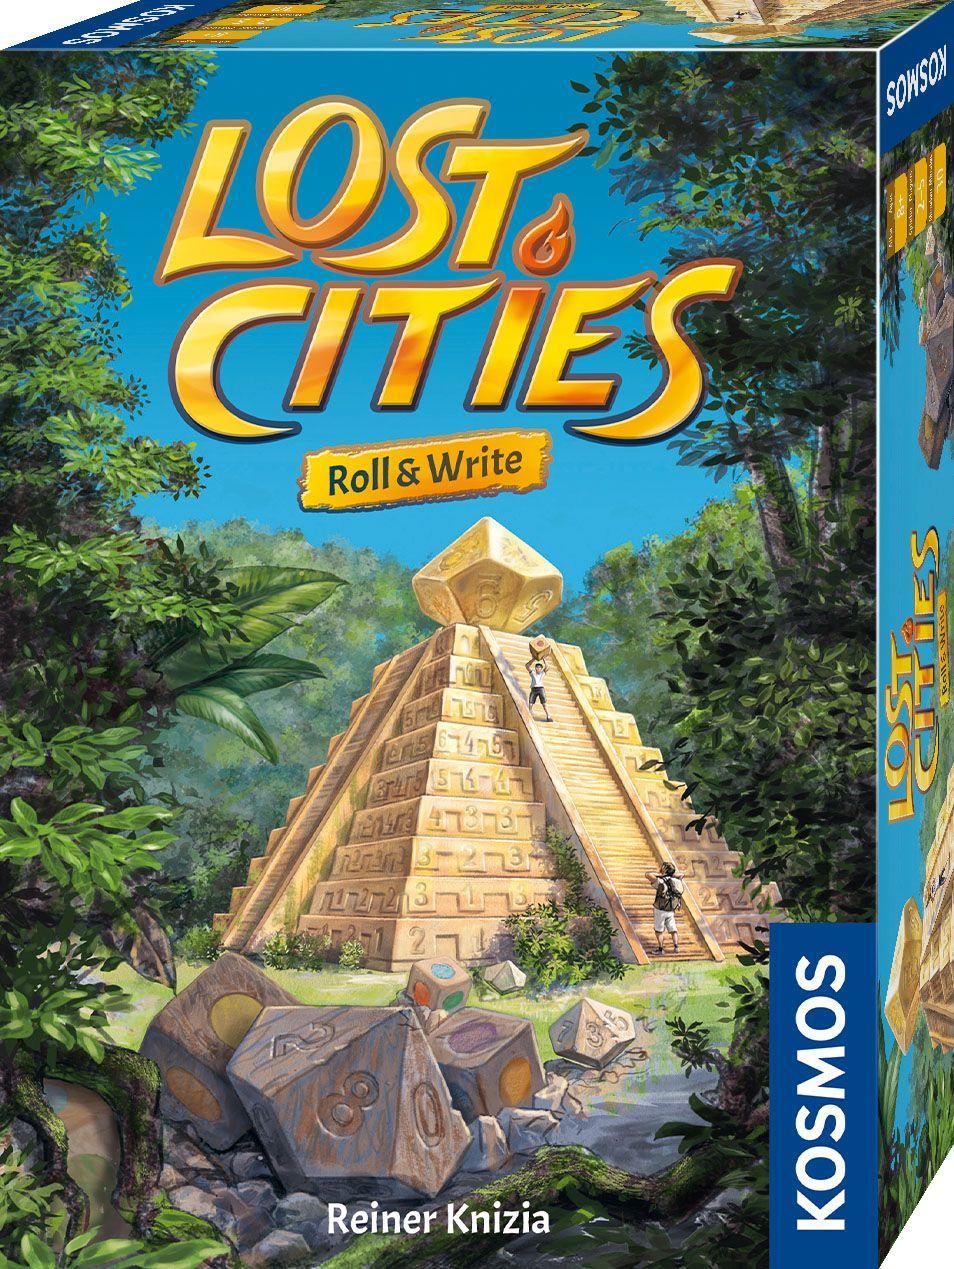 Hra/Hračka Lost Cities - Roll & Write 